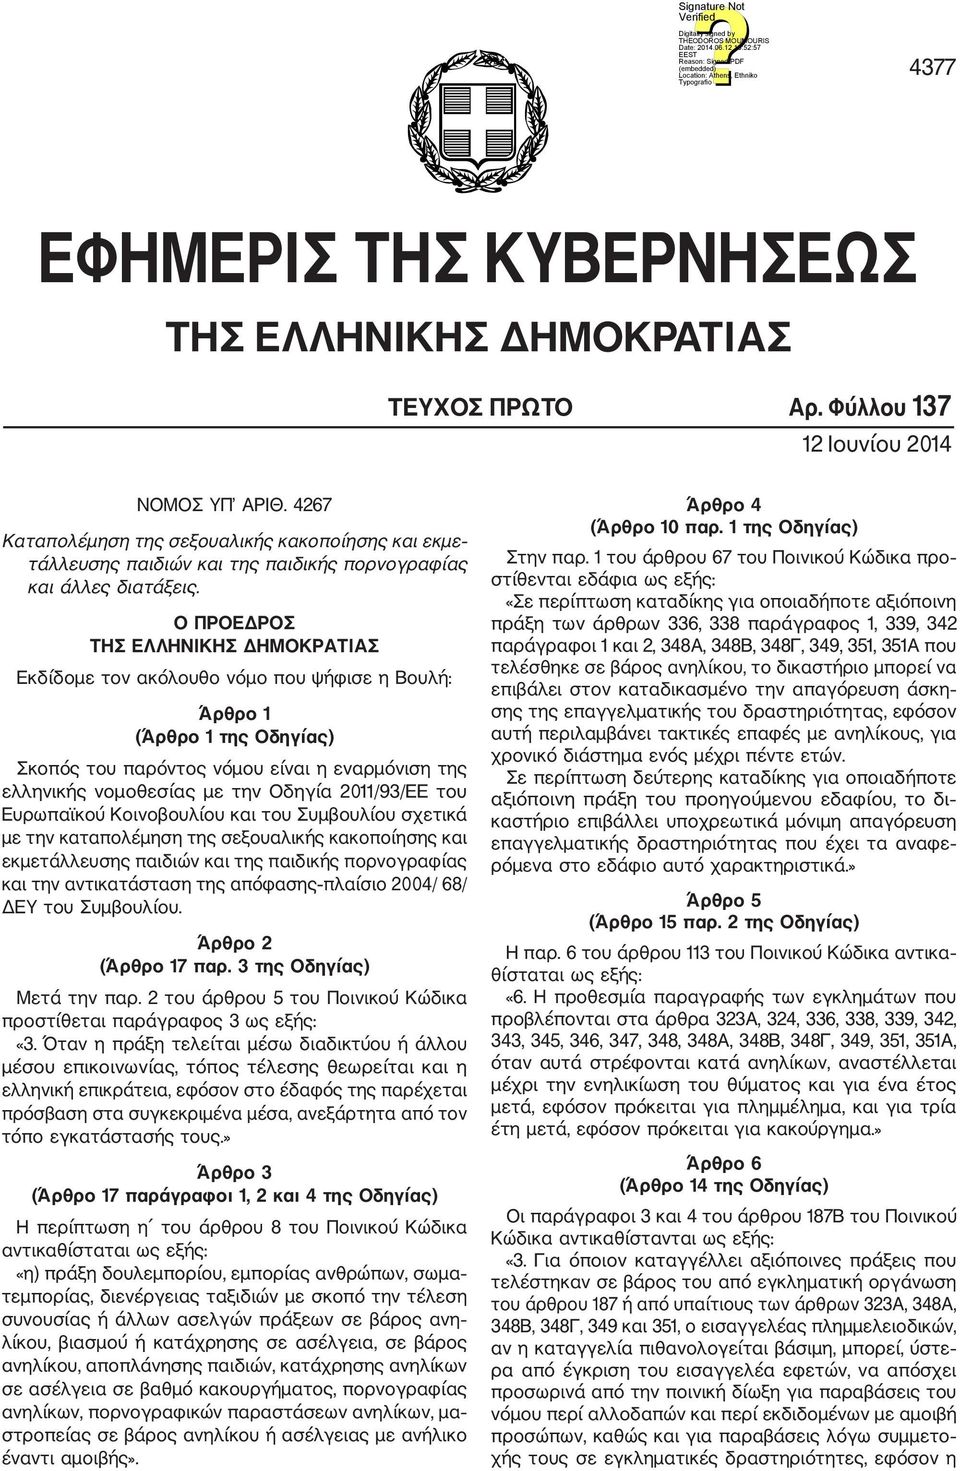 Ο ΠΡΟΕΔΡΟΣ ΤΗΣ ΕΛΛΗΝΙΚΗΣ ΔΗΜΟΚΡΑΤΙΑΣ Εκδίδομε τον ακόλουθο νόμο που ψήφισε η Βουλή: Άρθρο 1 (Άρθρο 1 της Οδηγίας) Σκοπός του παρόντος νόμου είναι η εναρμόνιση της ελληνικής νομοθεσίας με την Οδηγία